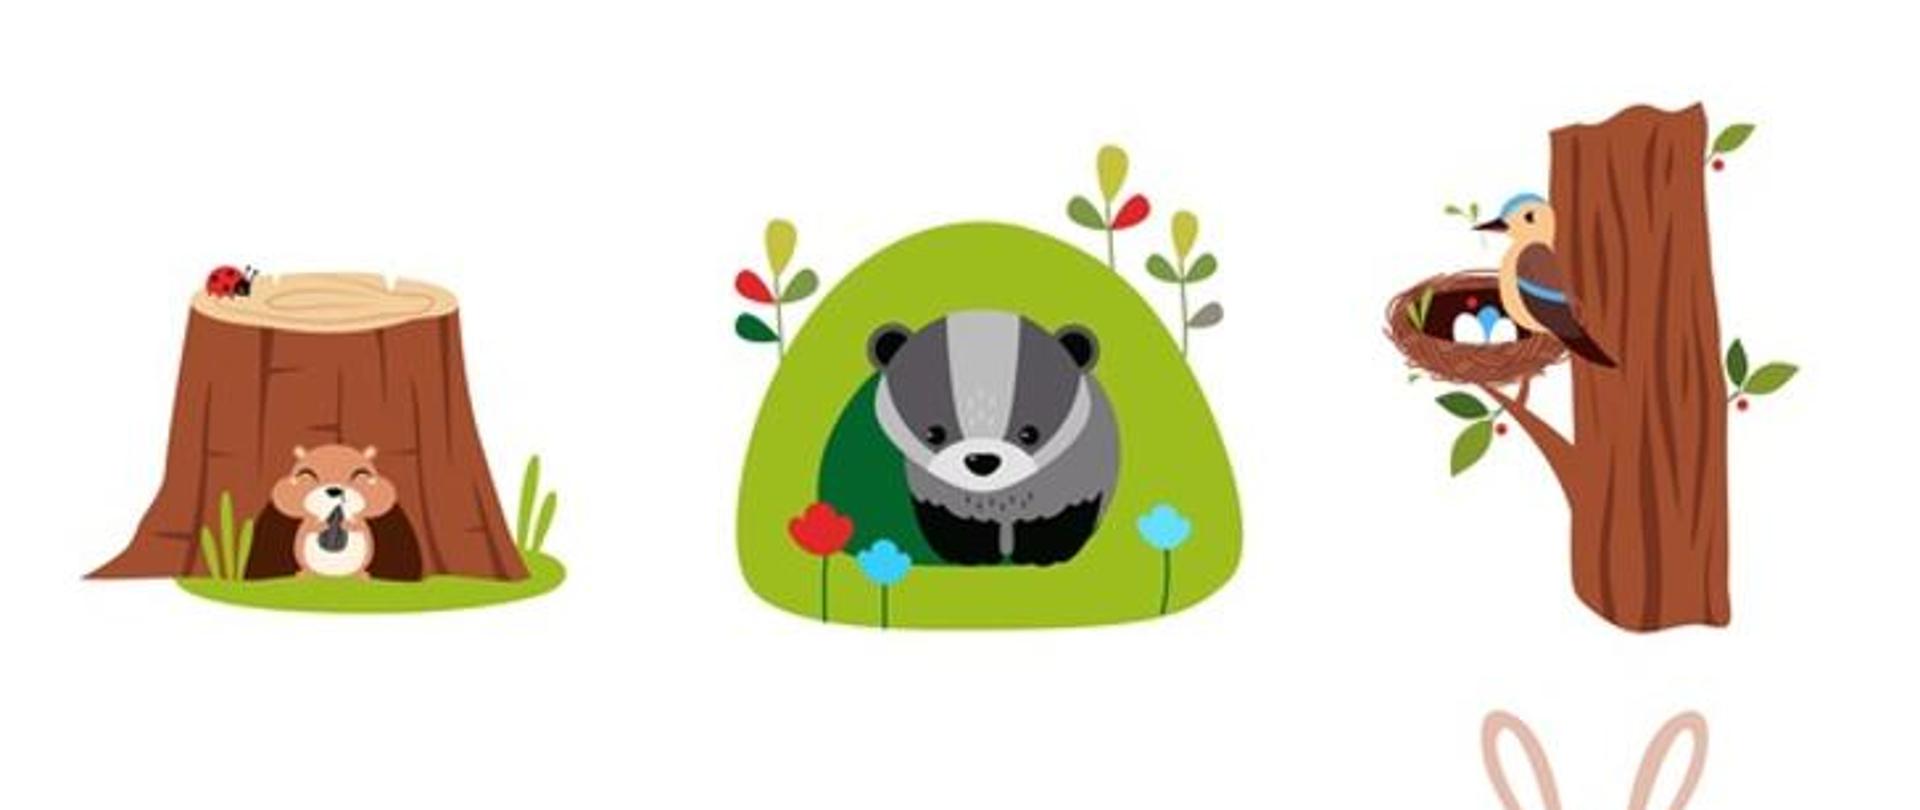 Grafika: zwierzęta leśne siedząc w norach i wydrążonych drzewach. Koncepcja odpoczynku ssaków leśnych w ich domu i schronieniach